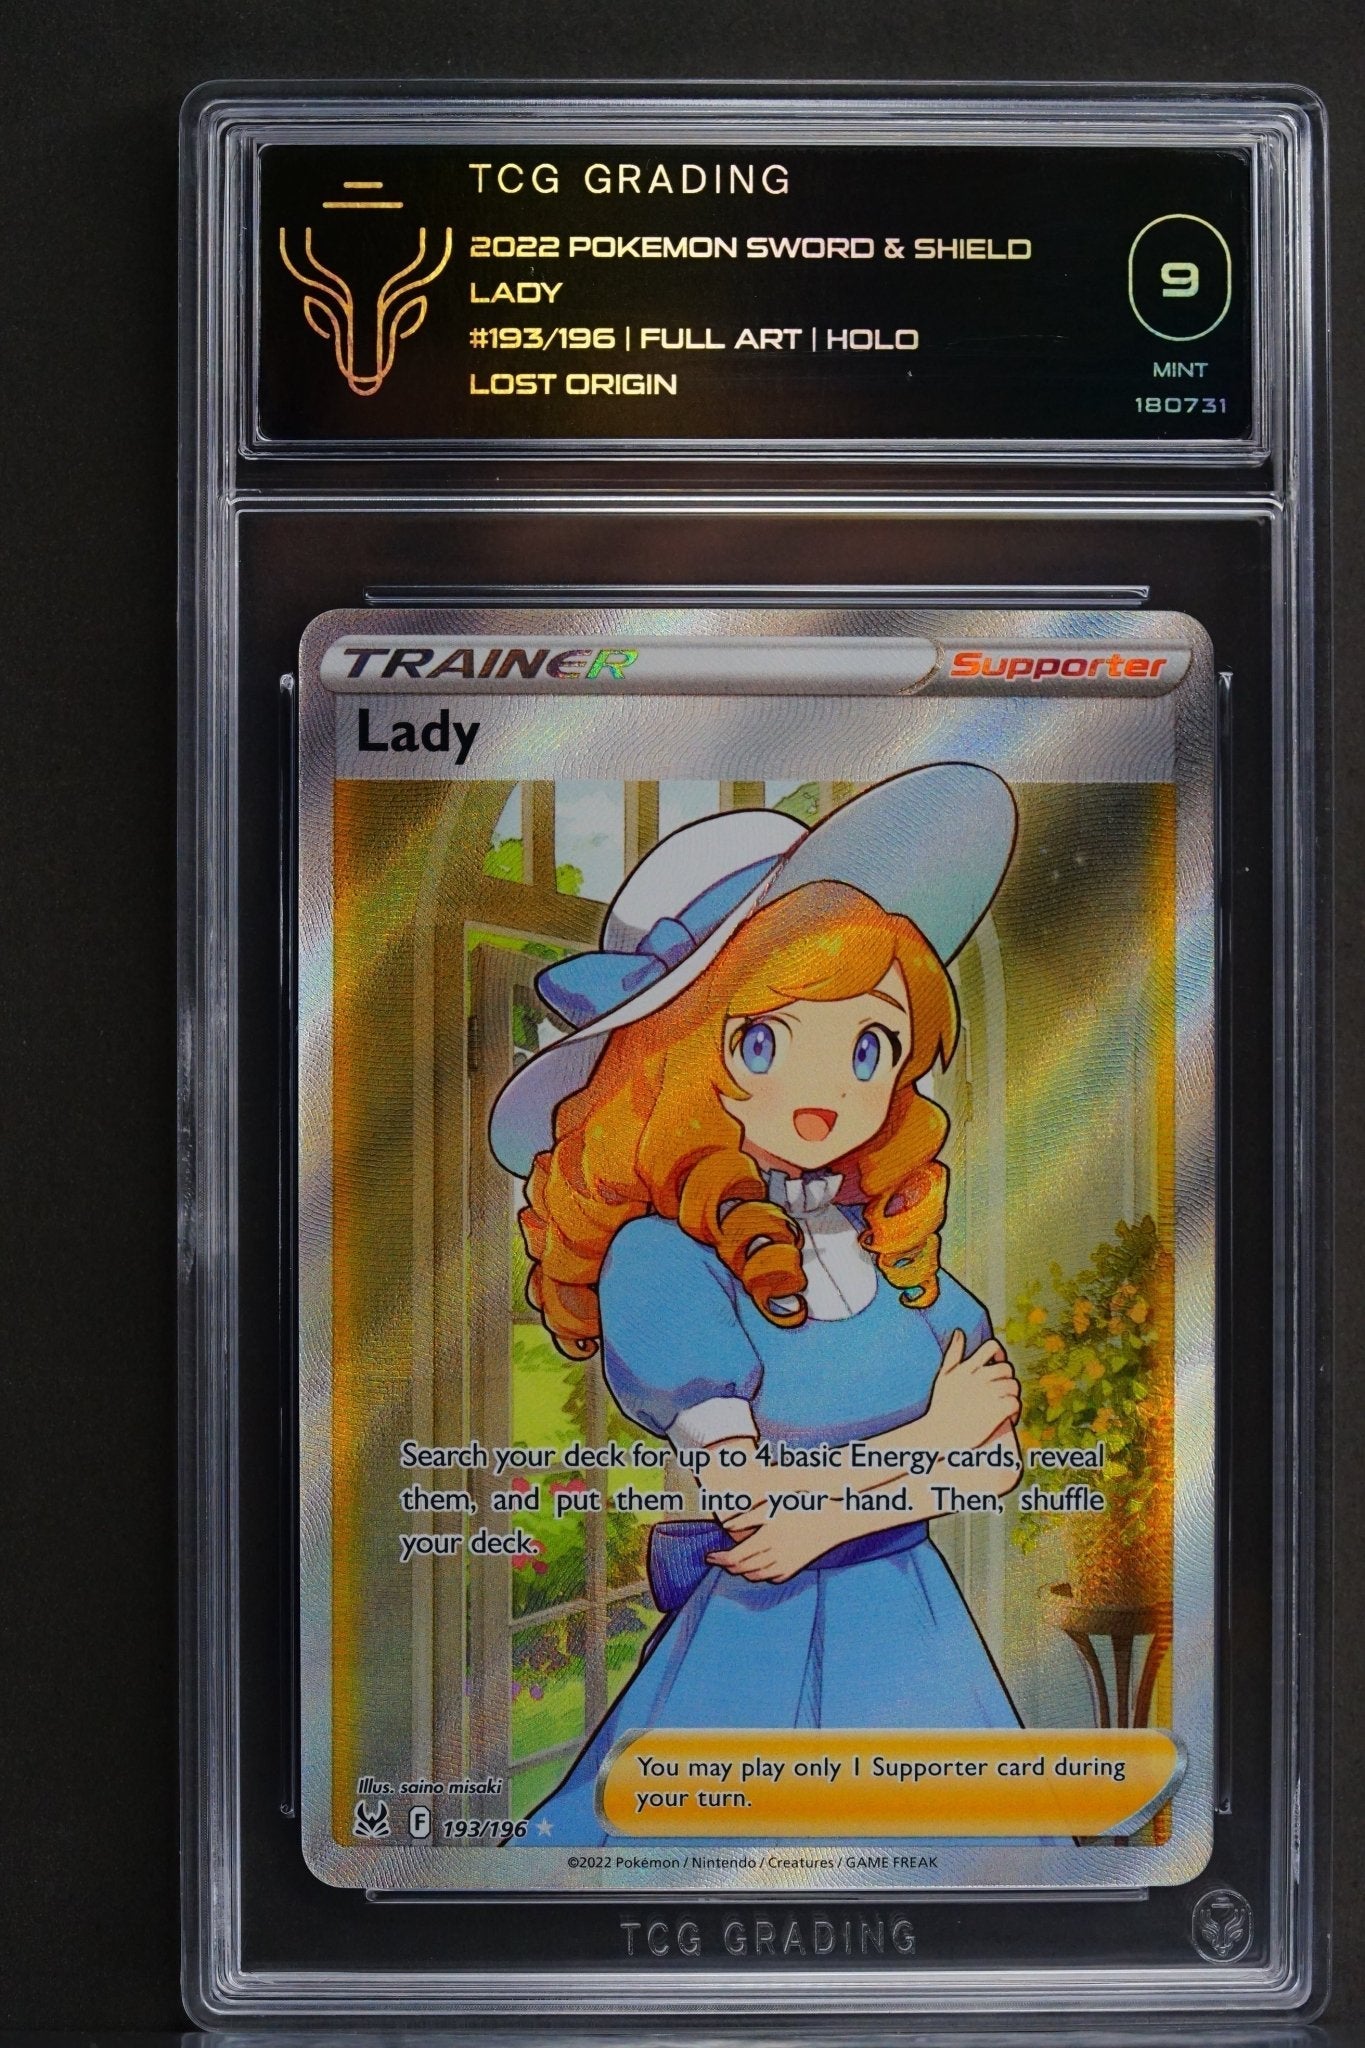 Pokemon TCG: Lady full art TCG 9 Mint - 193/196 - THE CARD SPOT PTY LTD.GradedPokémon